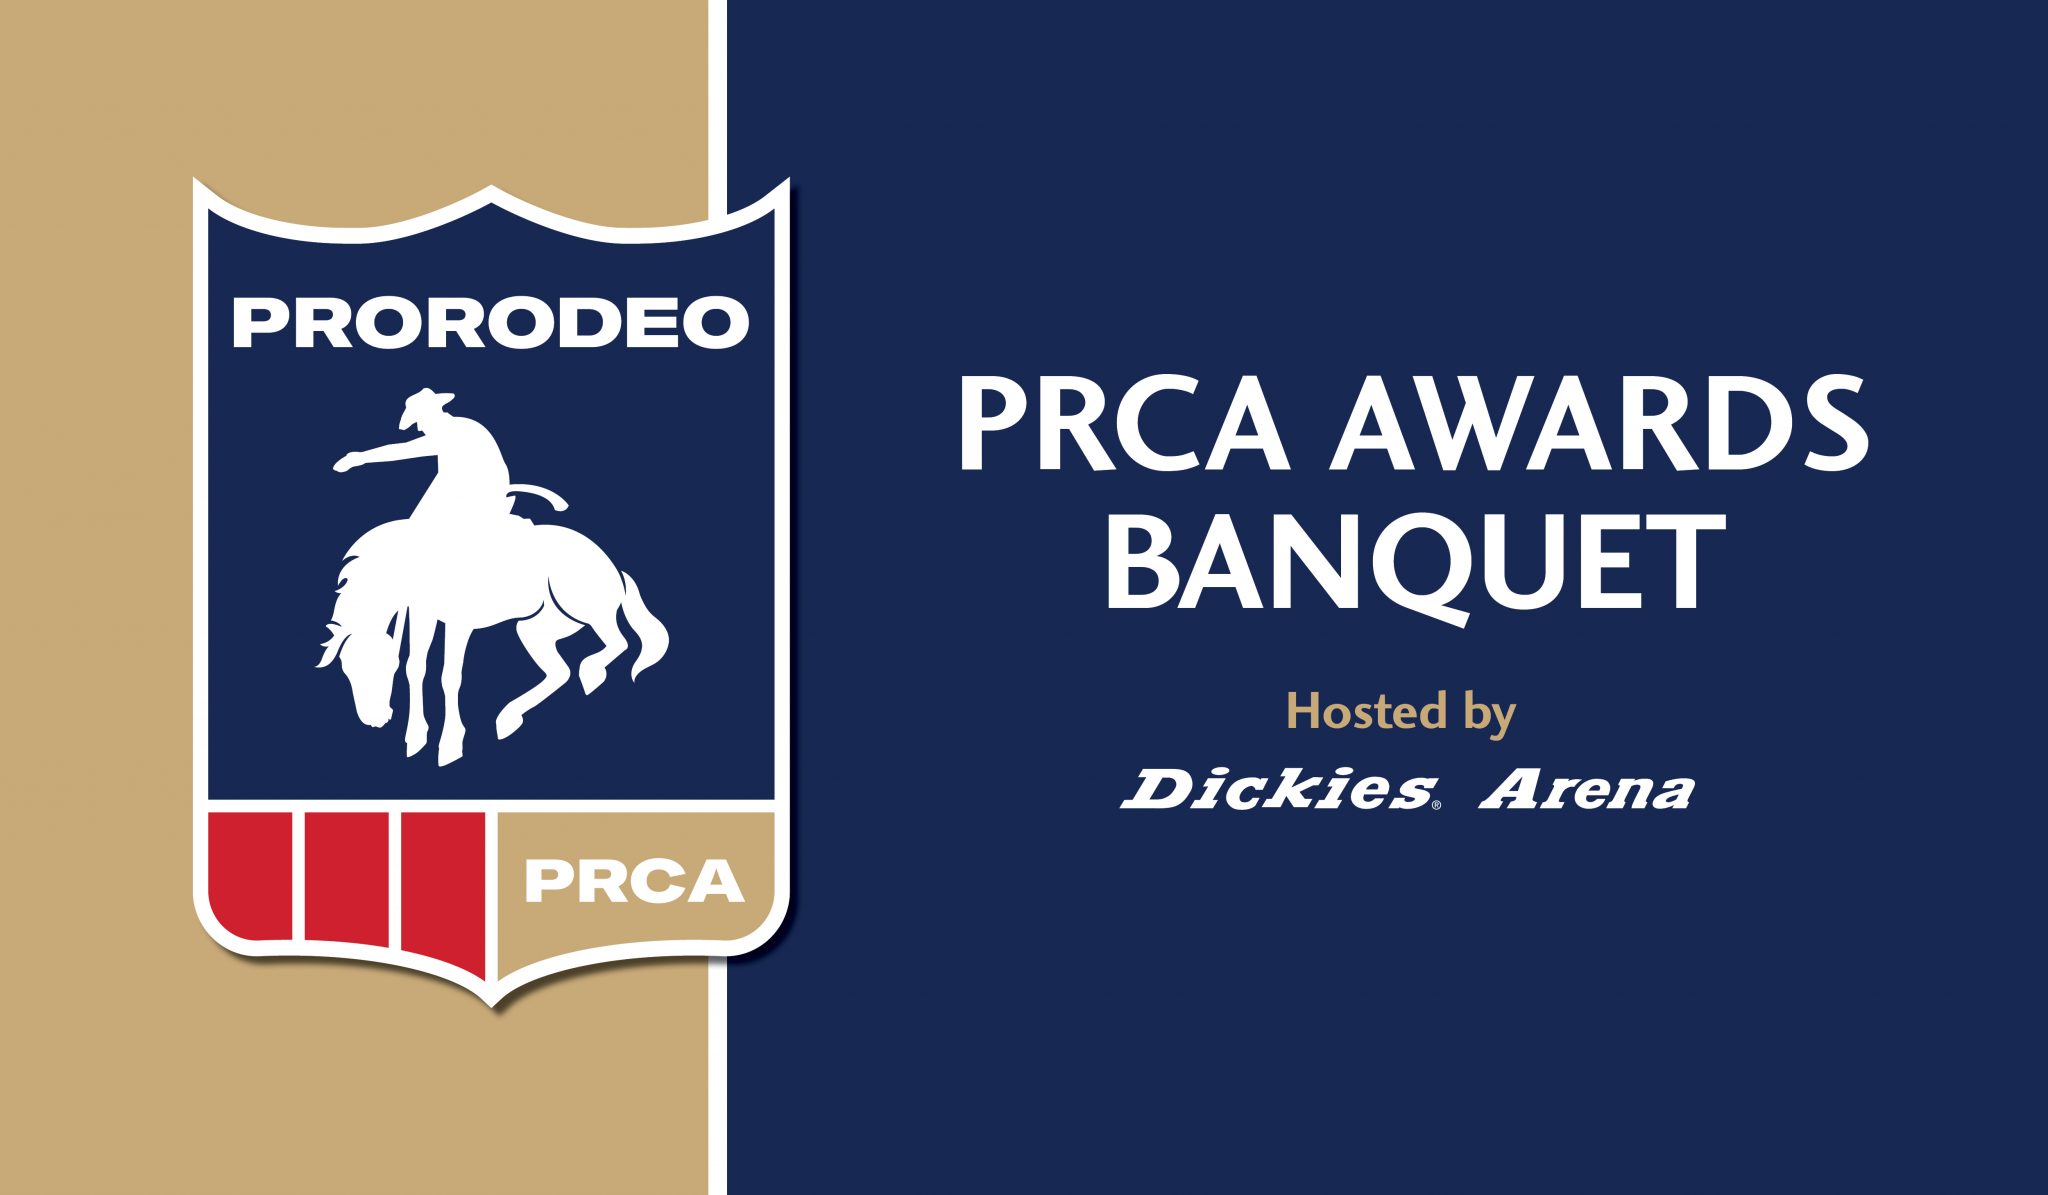 PRCA Awards Banquet Dickies Arena